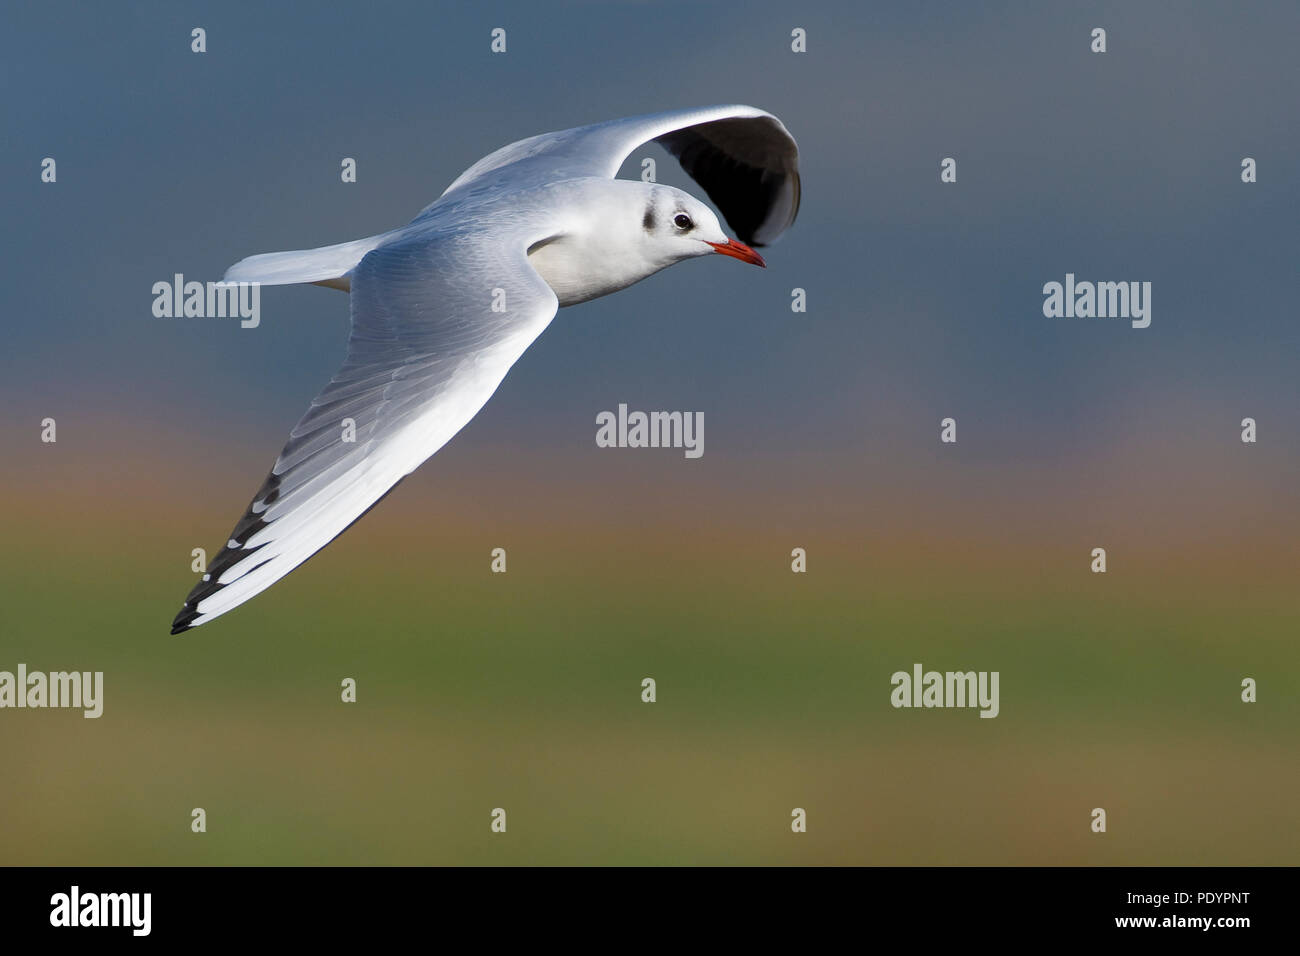 Volwassen kokmeeuw in winterkleed vliegend. Adult Black-headed gull in winter plumage flying. Stock Photo